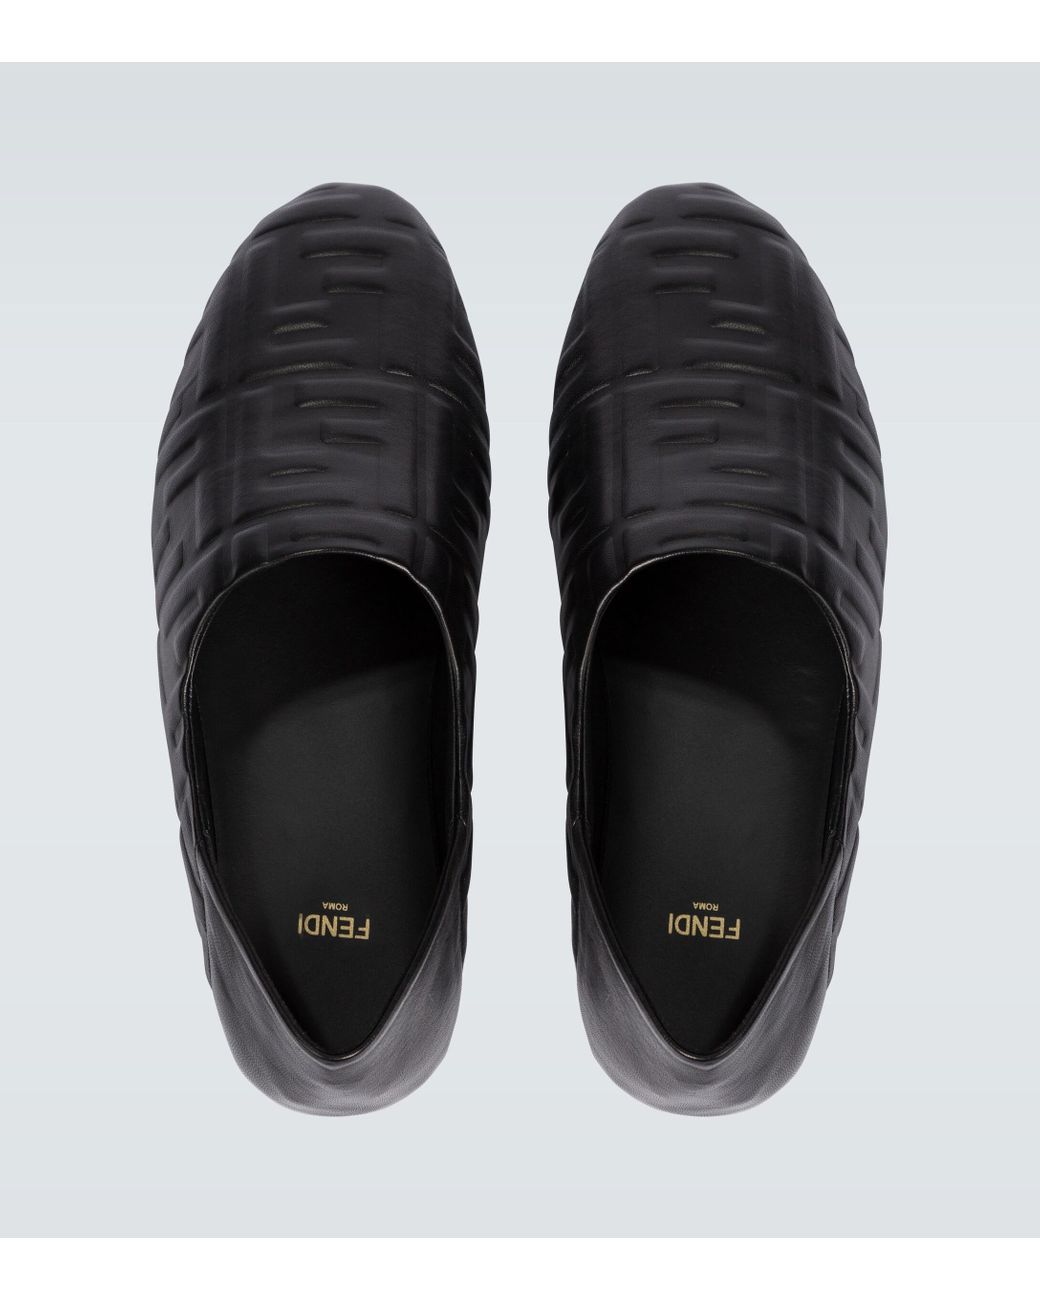 Slippers en cuir FF Fendi pour homme en coloris Noir Homme Chaussures Chaussures à enfiler Slippers 